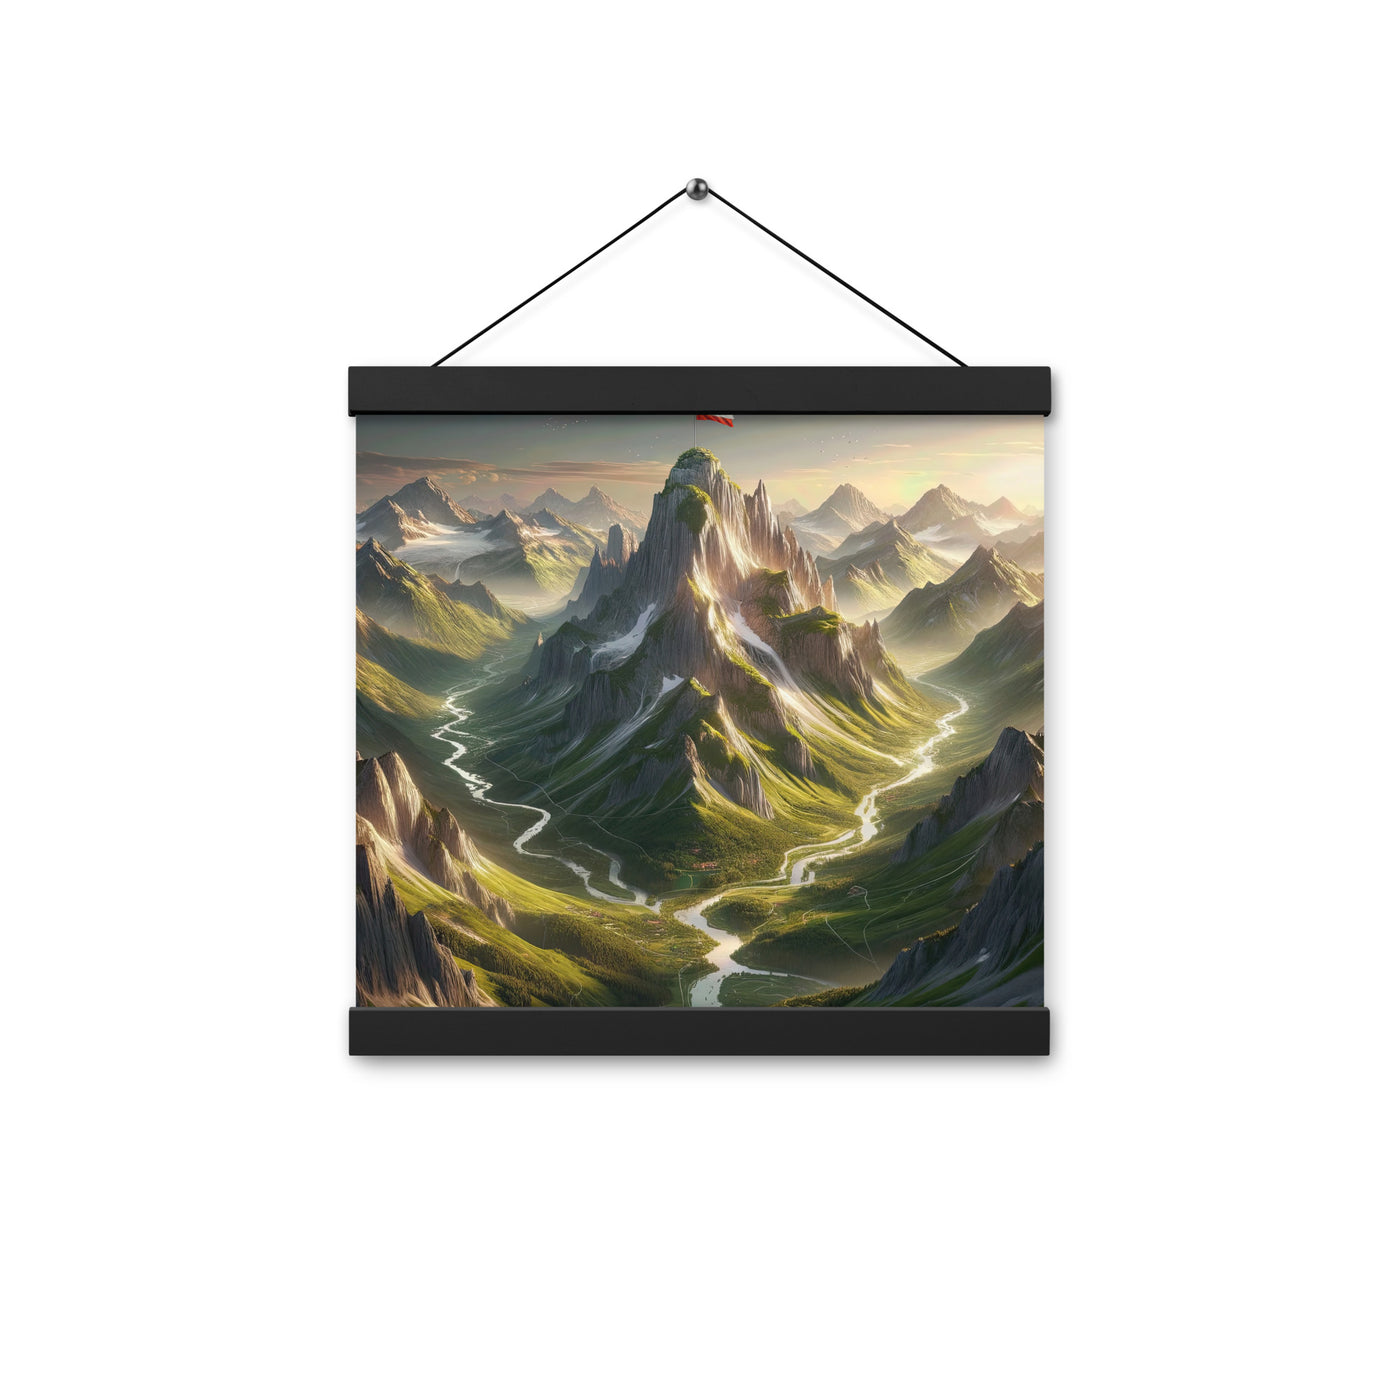 Fotorealistisches Bild der Alpen mit österreichischer Flagge, scharfen Gipfeln und grünen Tälern - Enhanced Matte Paper Poster With berge xxx yyy zzz 30.5 x 30.5 cm